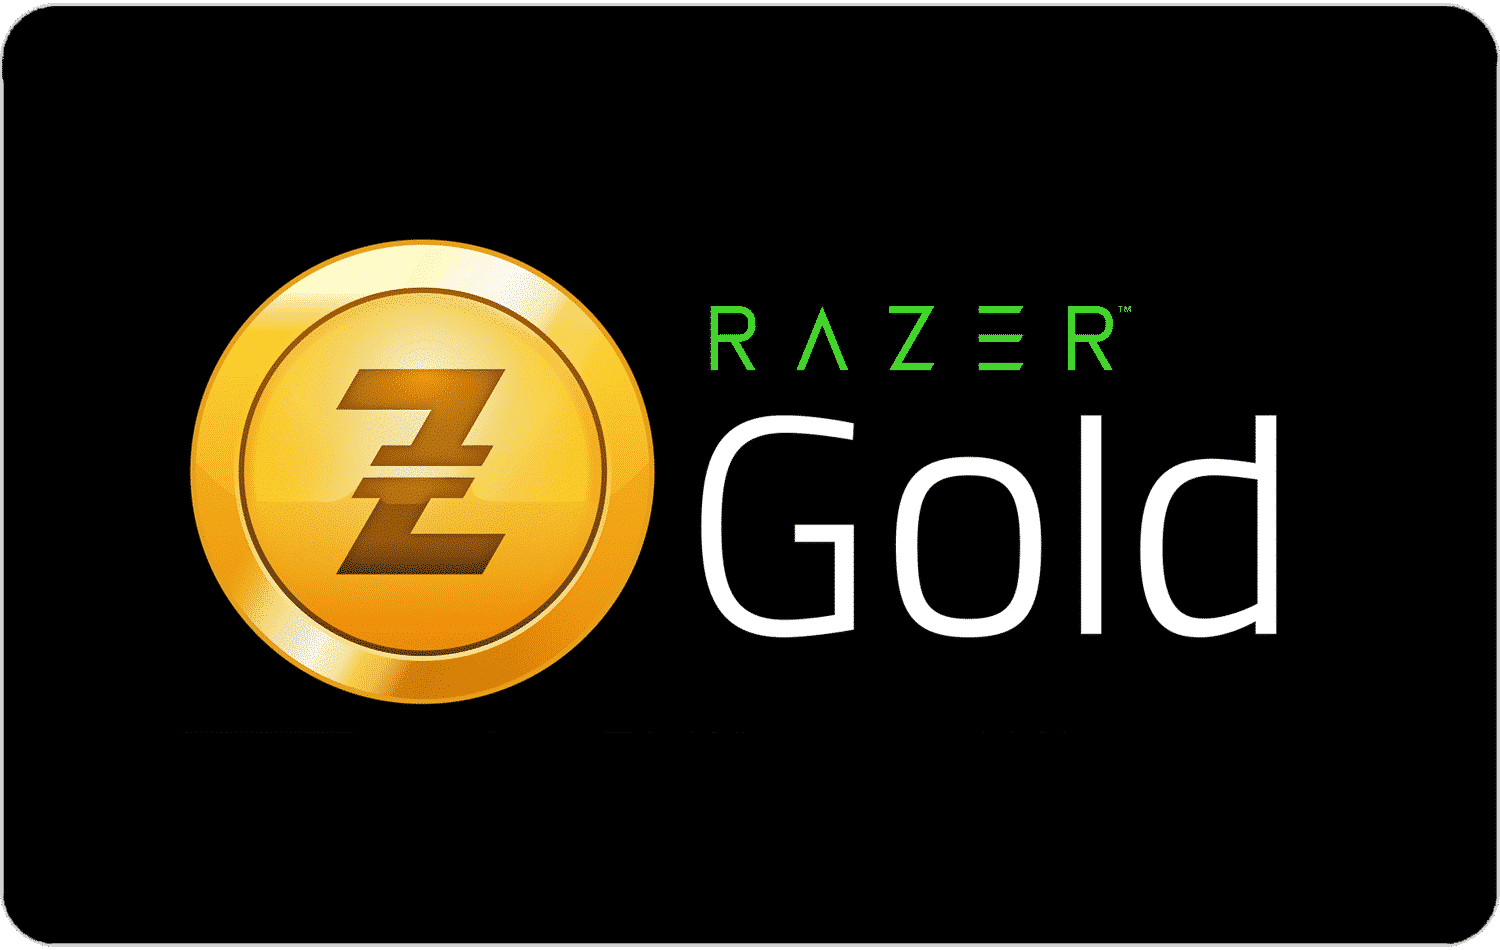 Razer gold nos consoles - aproveite agora | 4a0c2881 razer | married games razer | razer | razer gold nos consoles